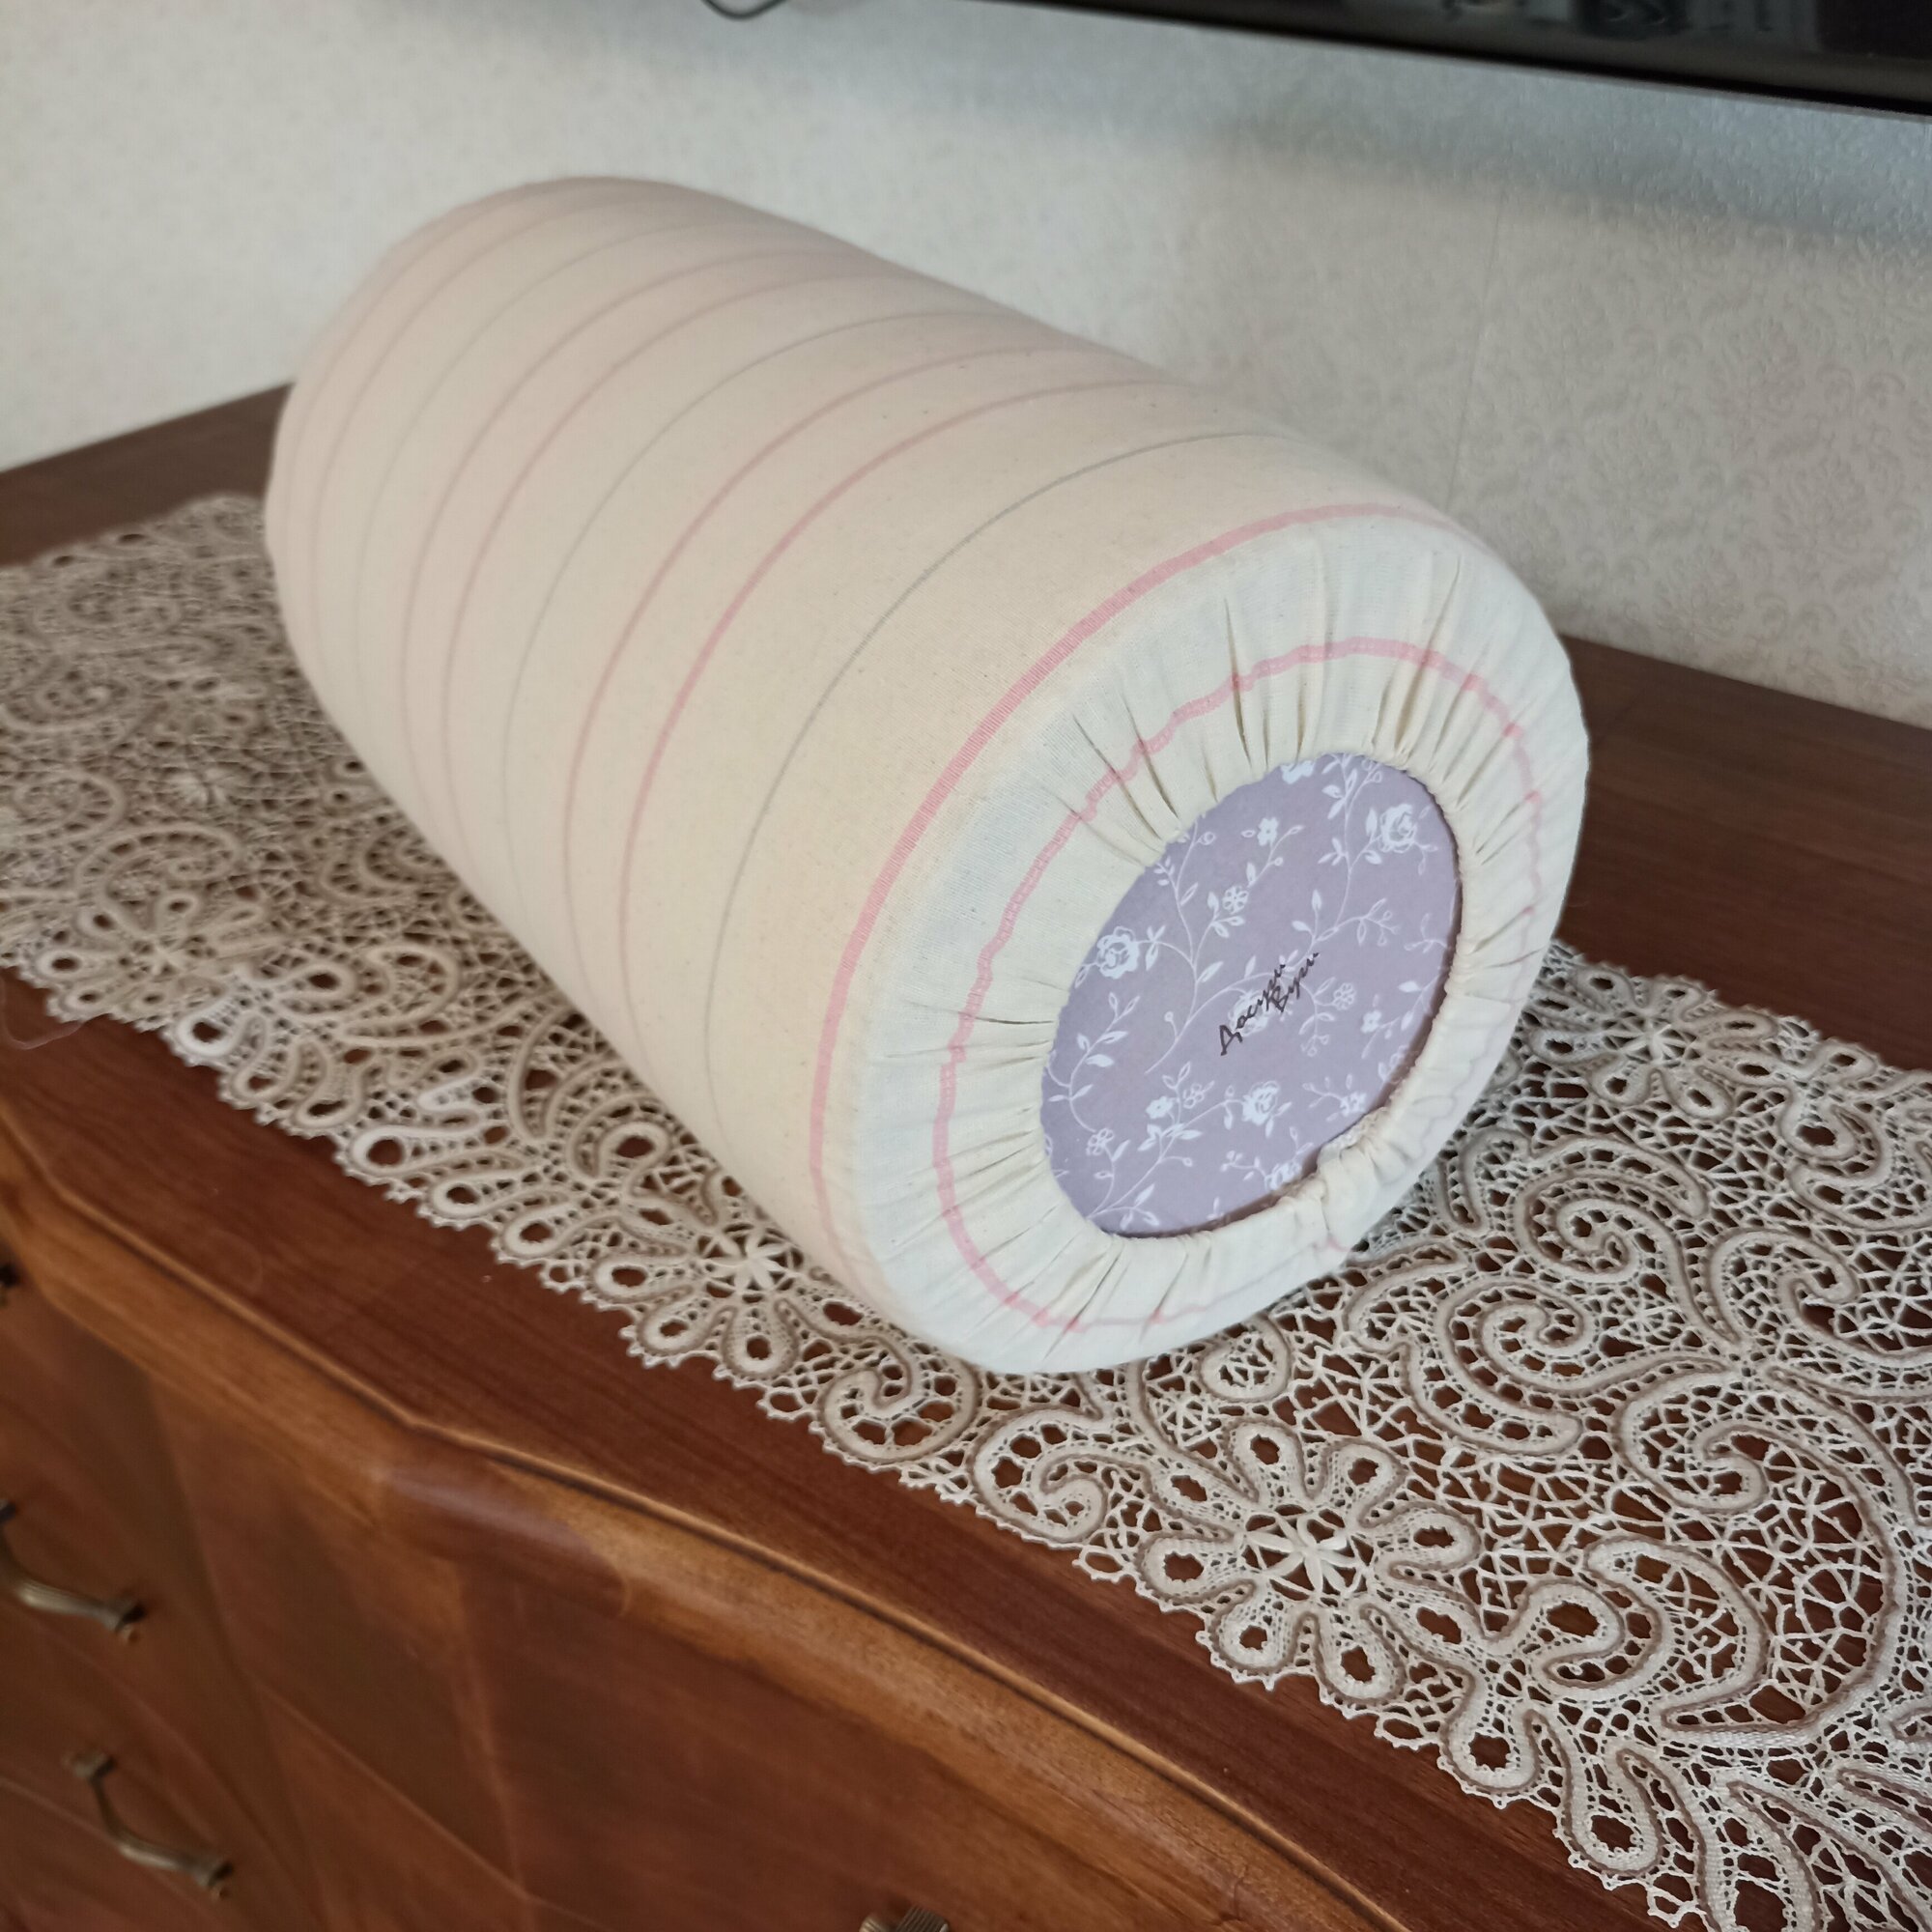 Подушка-валик "Мини", 24х37см, 2,6 кг, производство Досугивуги, для кружевоплетения и плетения макраме.